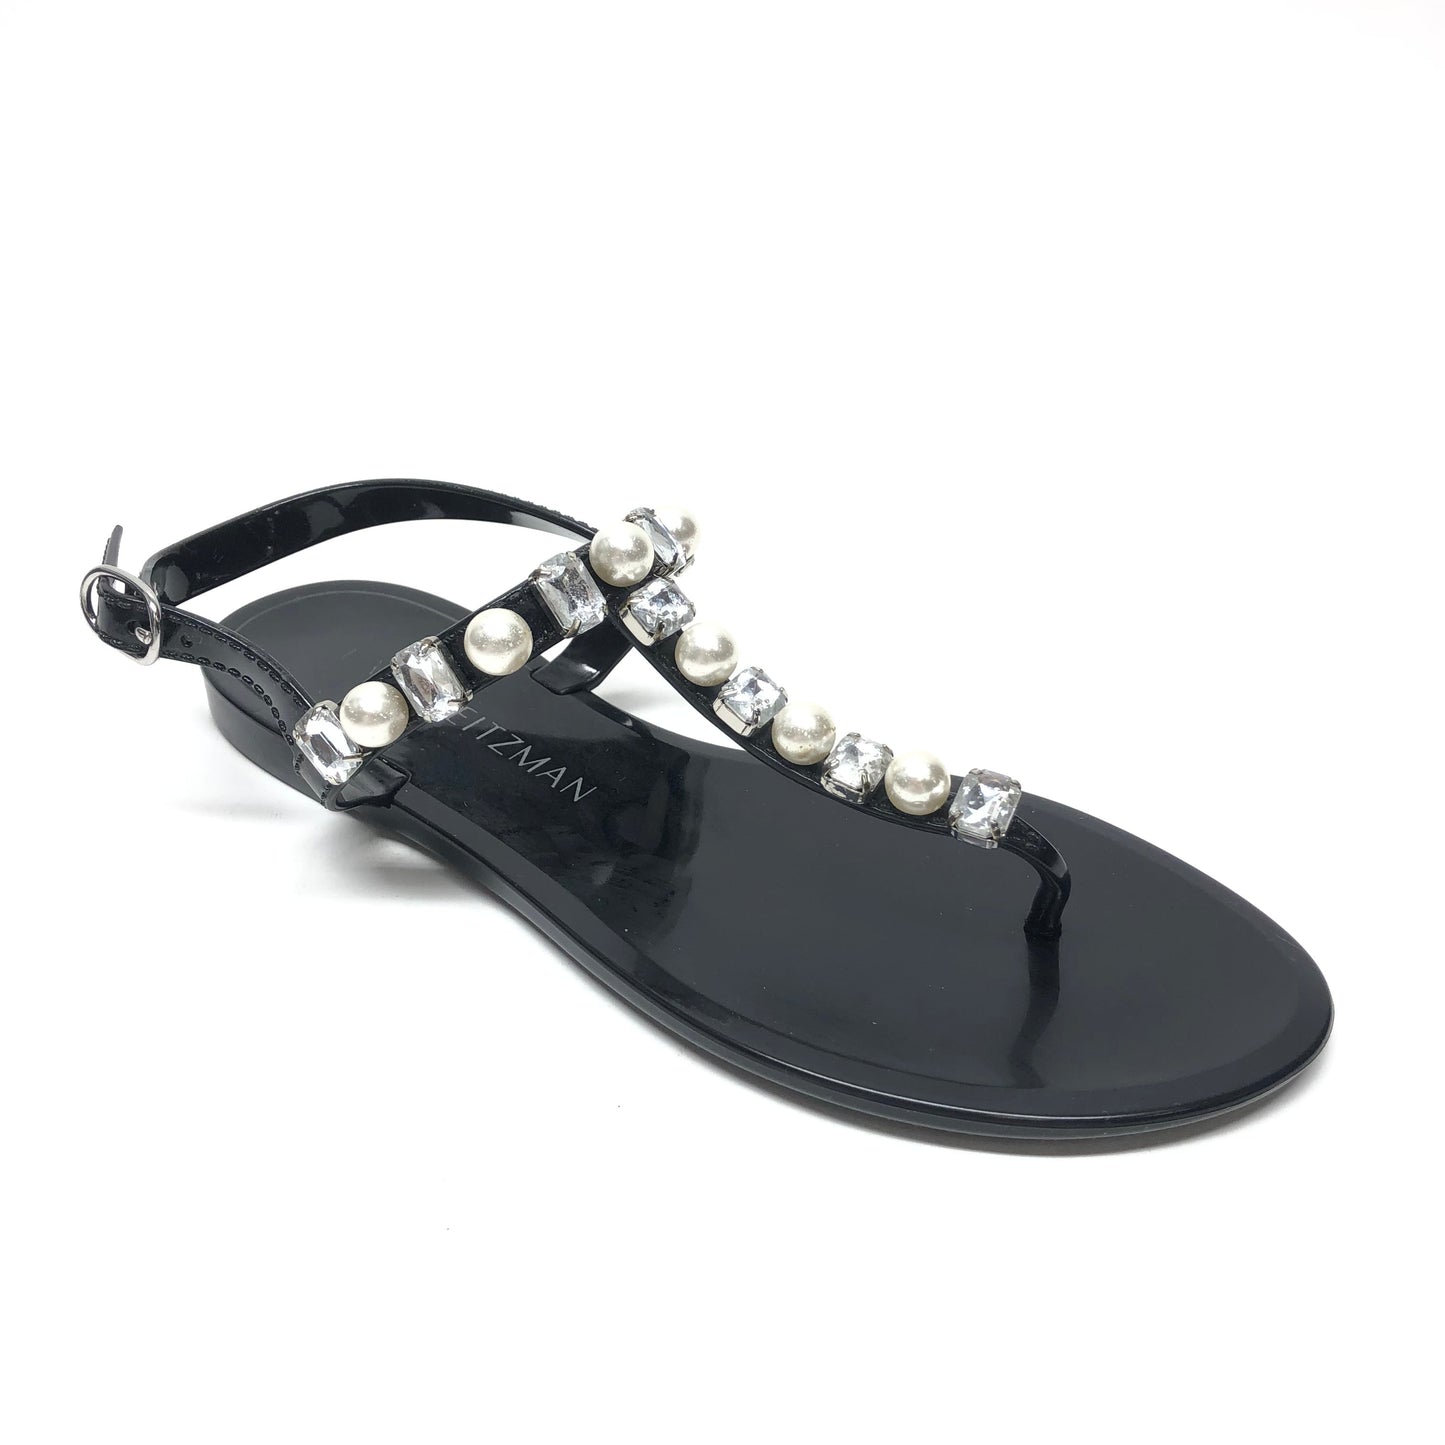 Black Sandals Flats Stuart Weitzman, Size 8